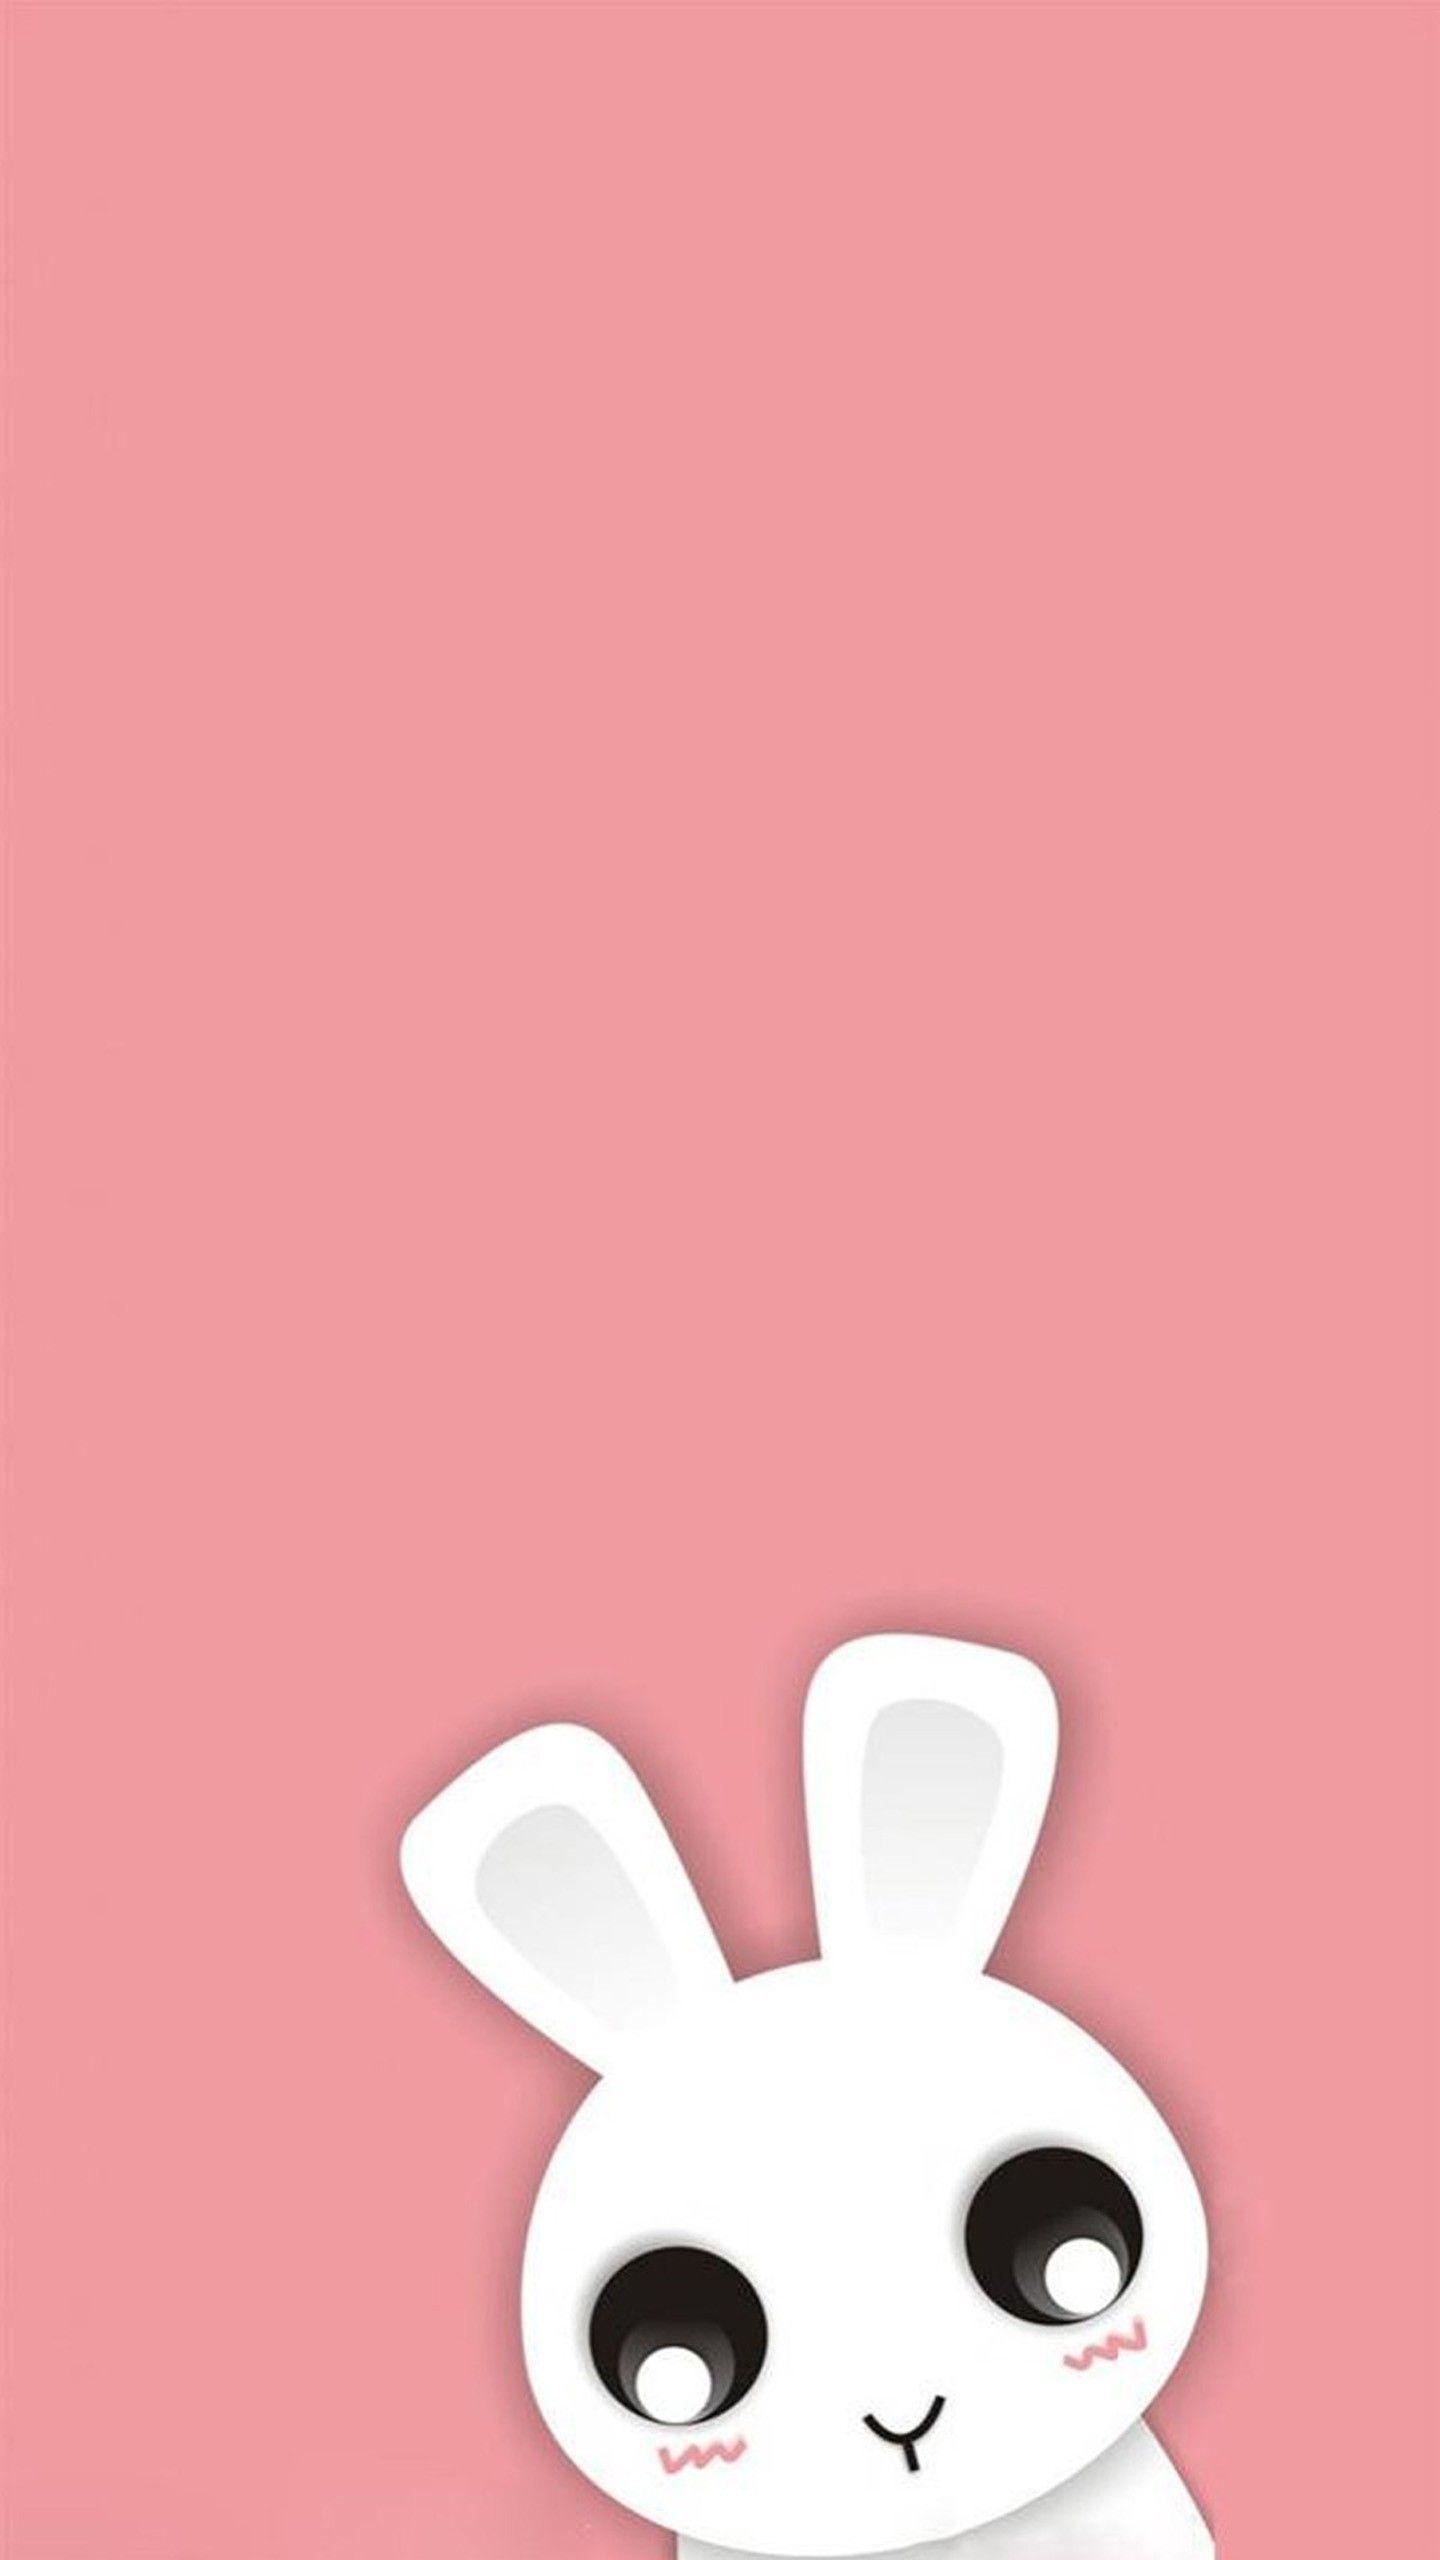 Cute Cartoon Bunny Wallpaper Free Cute Cartoon Bunny